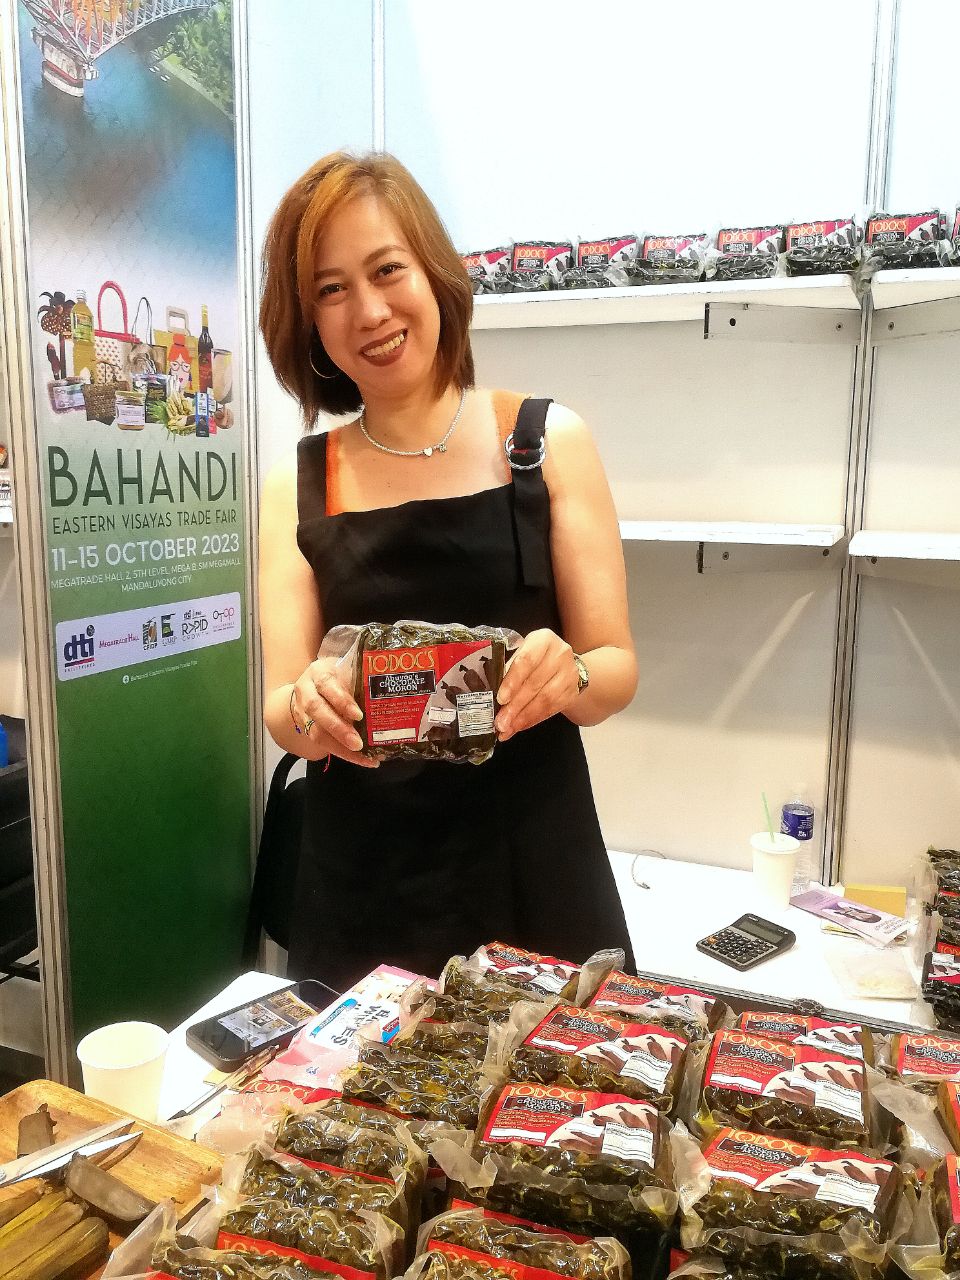 SM Megamall Hosts Eastern Visayas Trade Fair: Bahandi